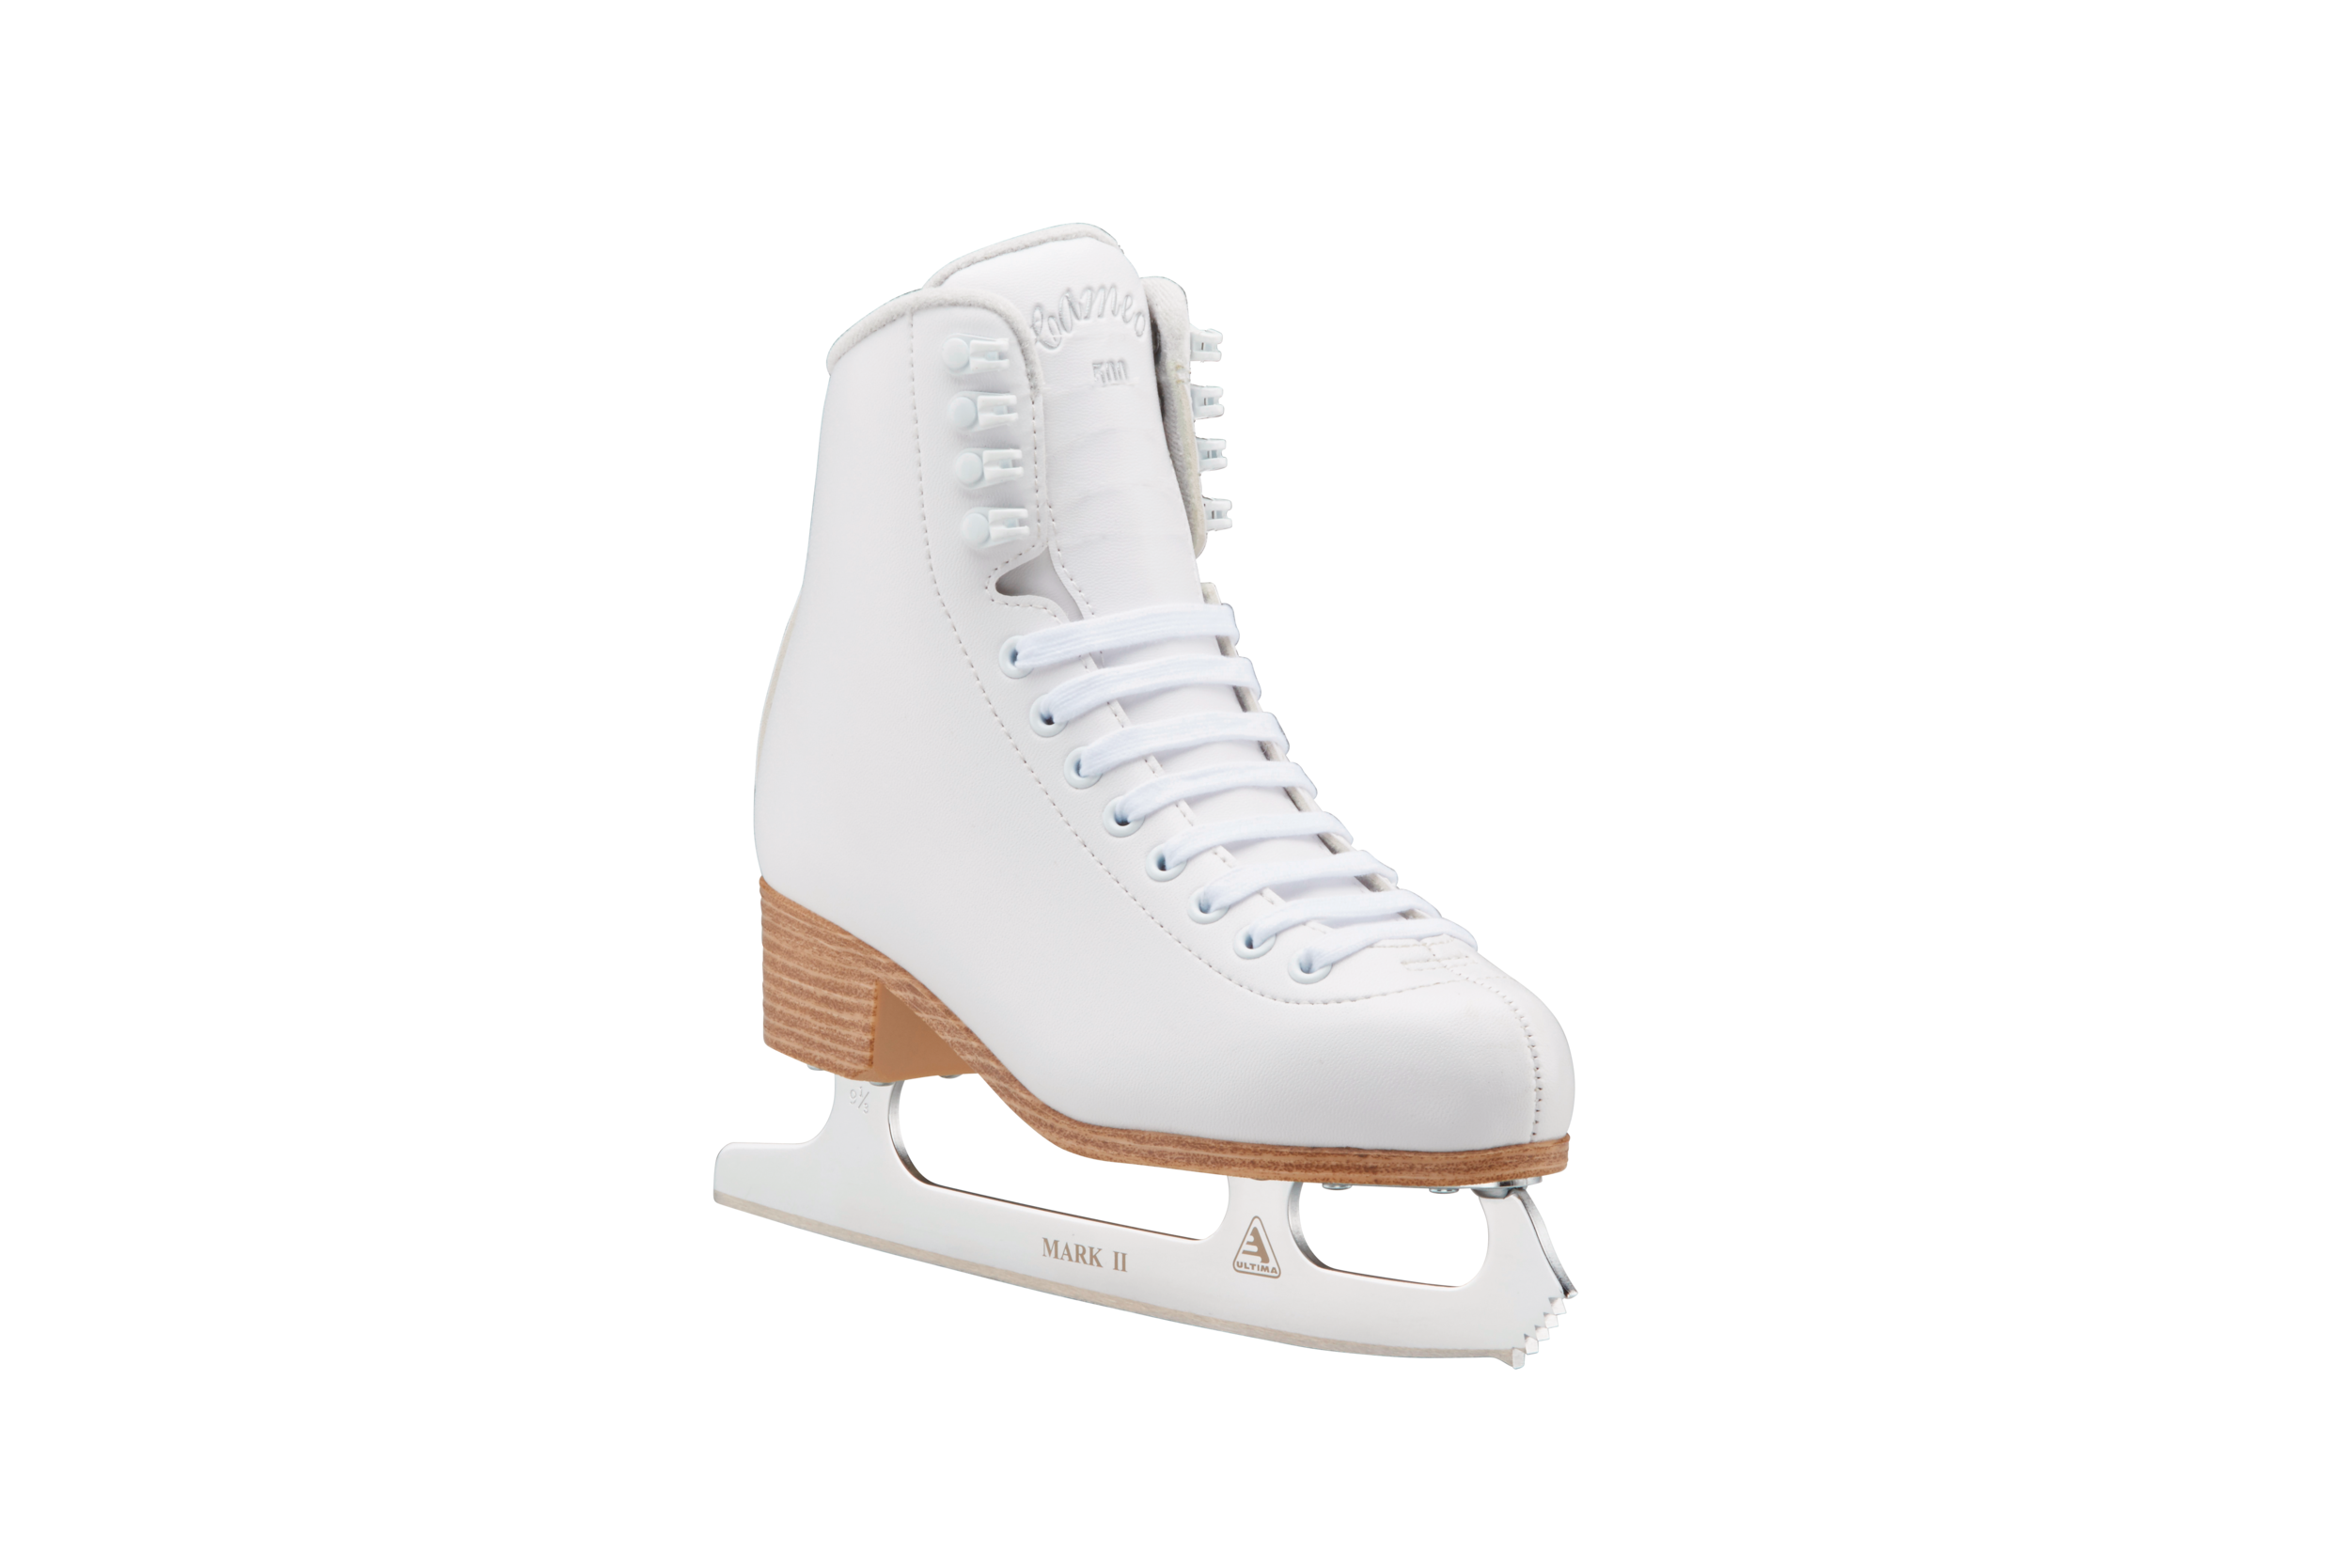 Cameo by Jackson 500 Women's Vinyl Senior Recreational Skates - White (Size 4)